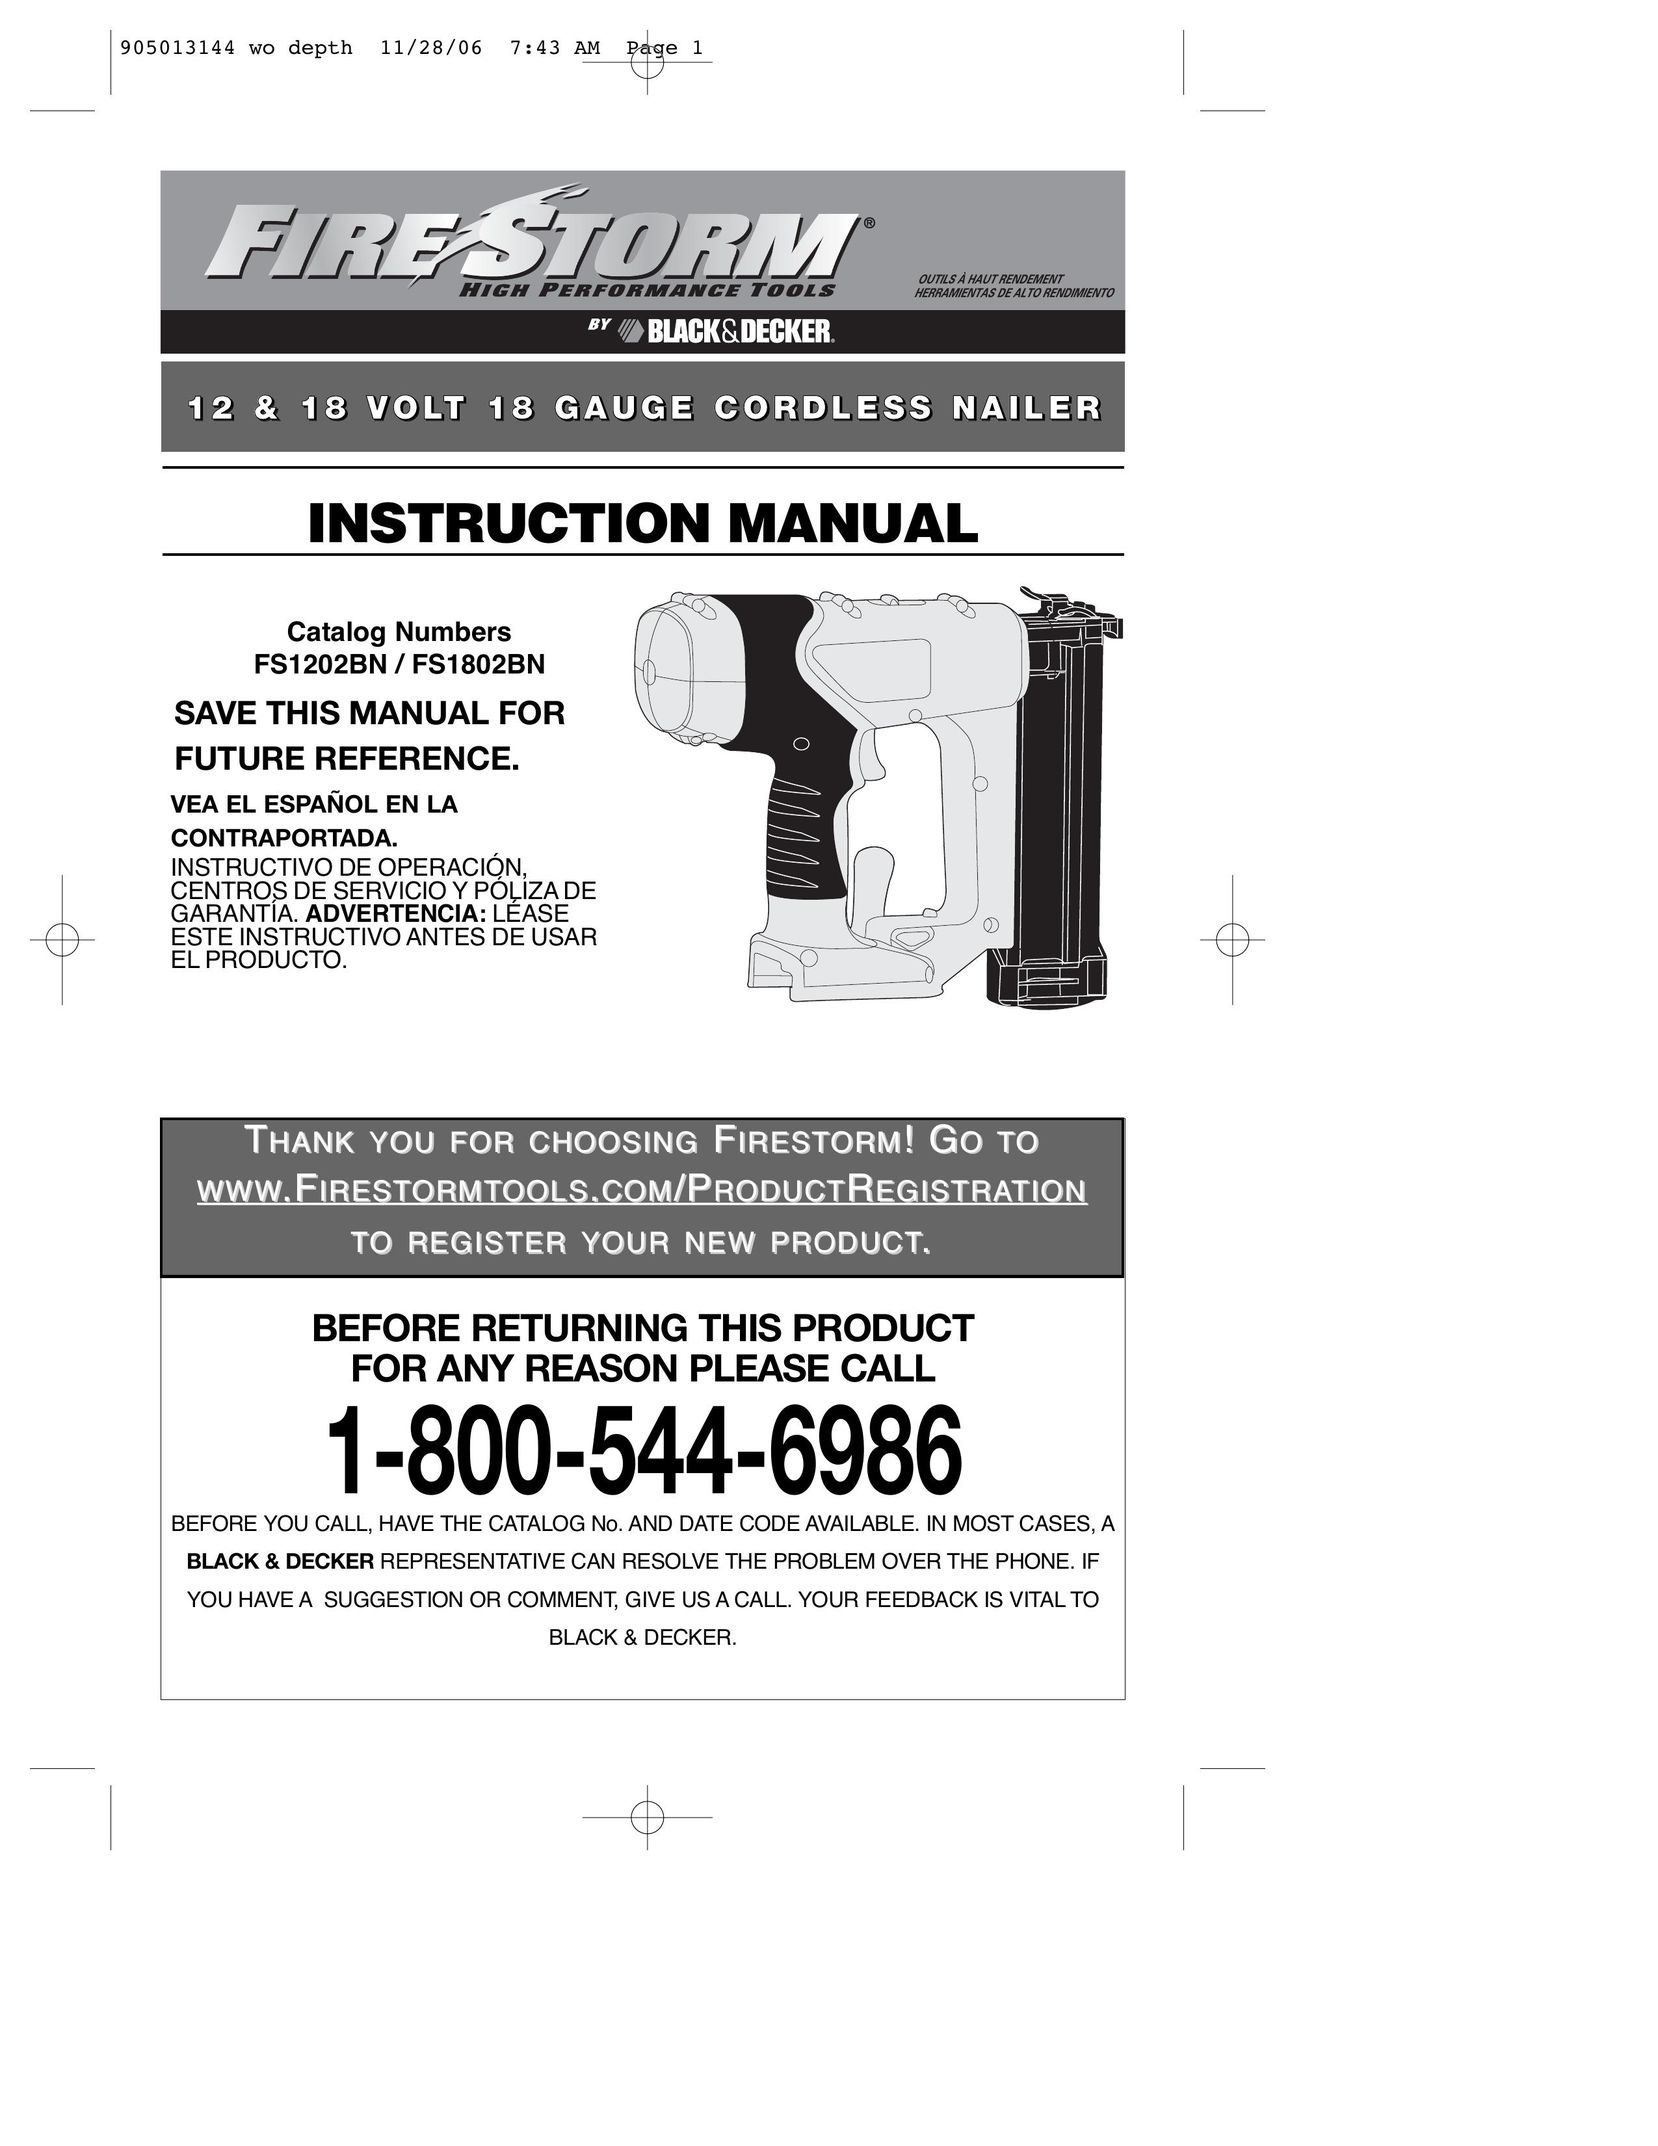 Black & Decker FS1802BN Nail Gun User Manual